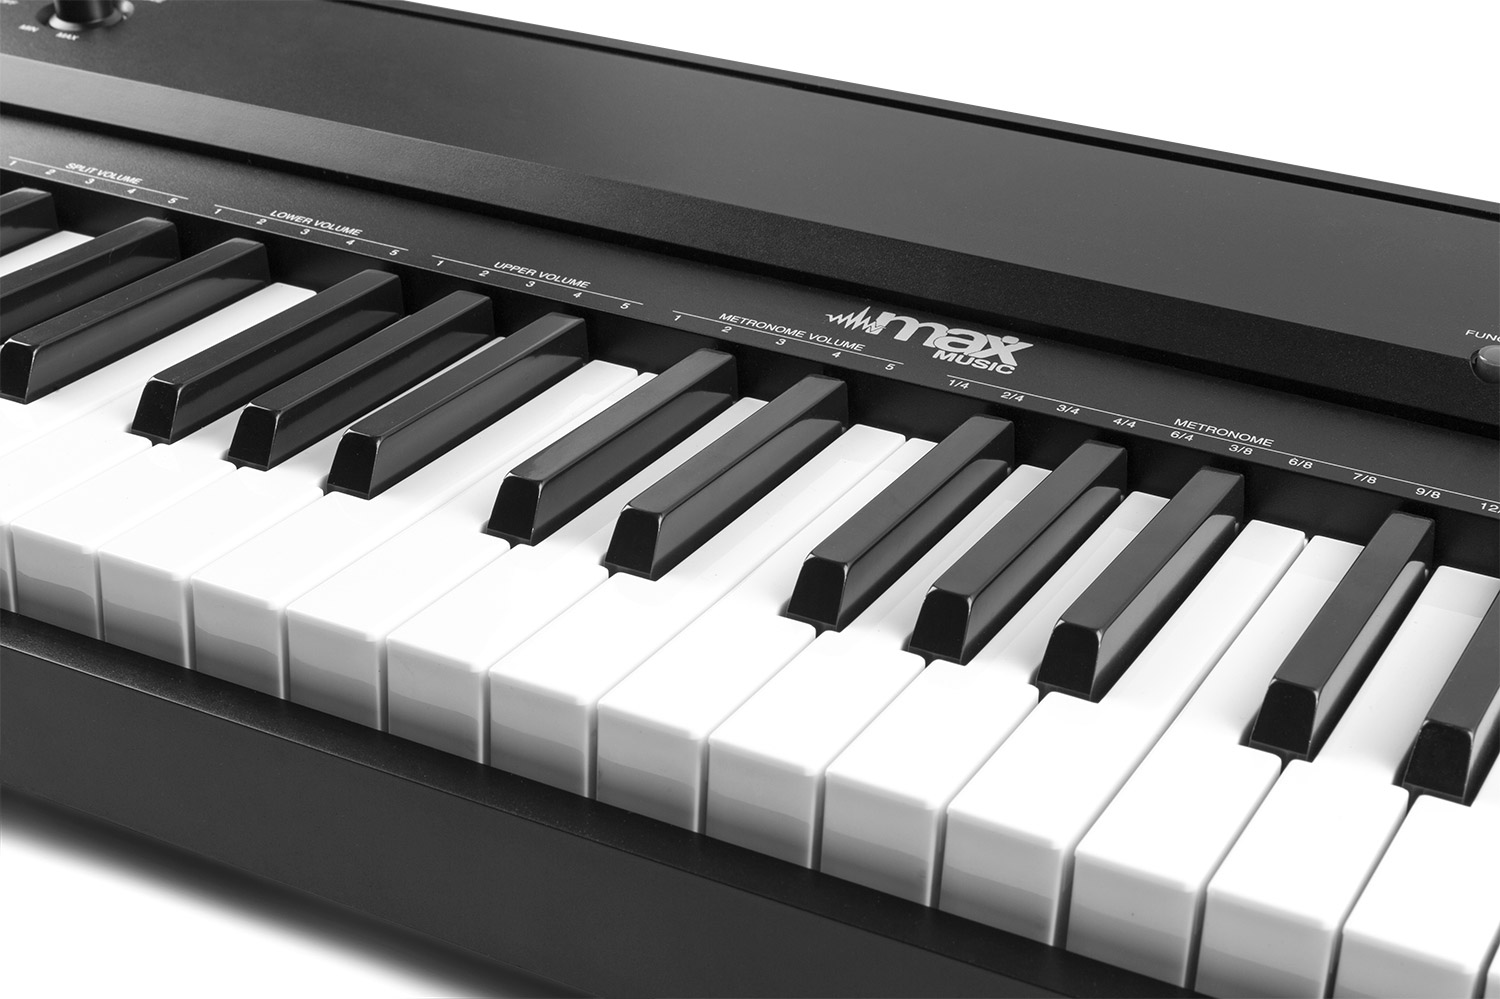 MAX KB6 Clavier Électronique pour Musicien Confirmé avec Stand